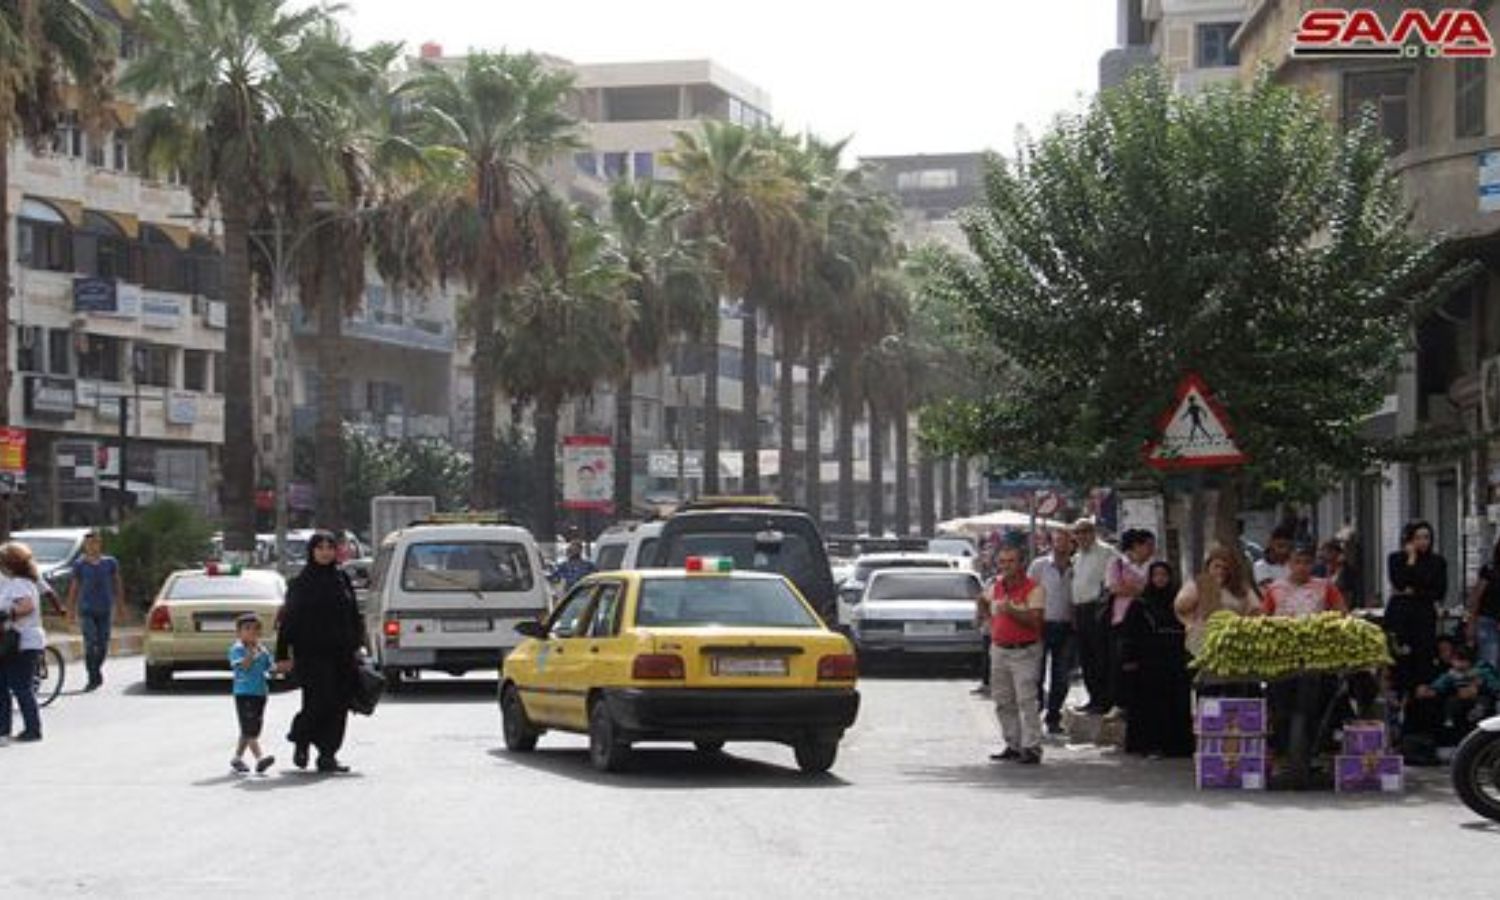 سيارات أجرة (تكسي) في شوارع طرطوس- 2018 (سانا)